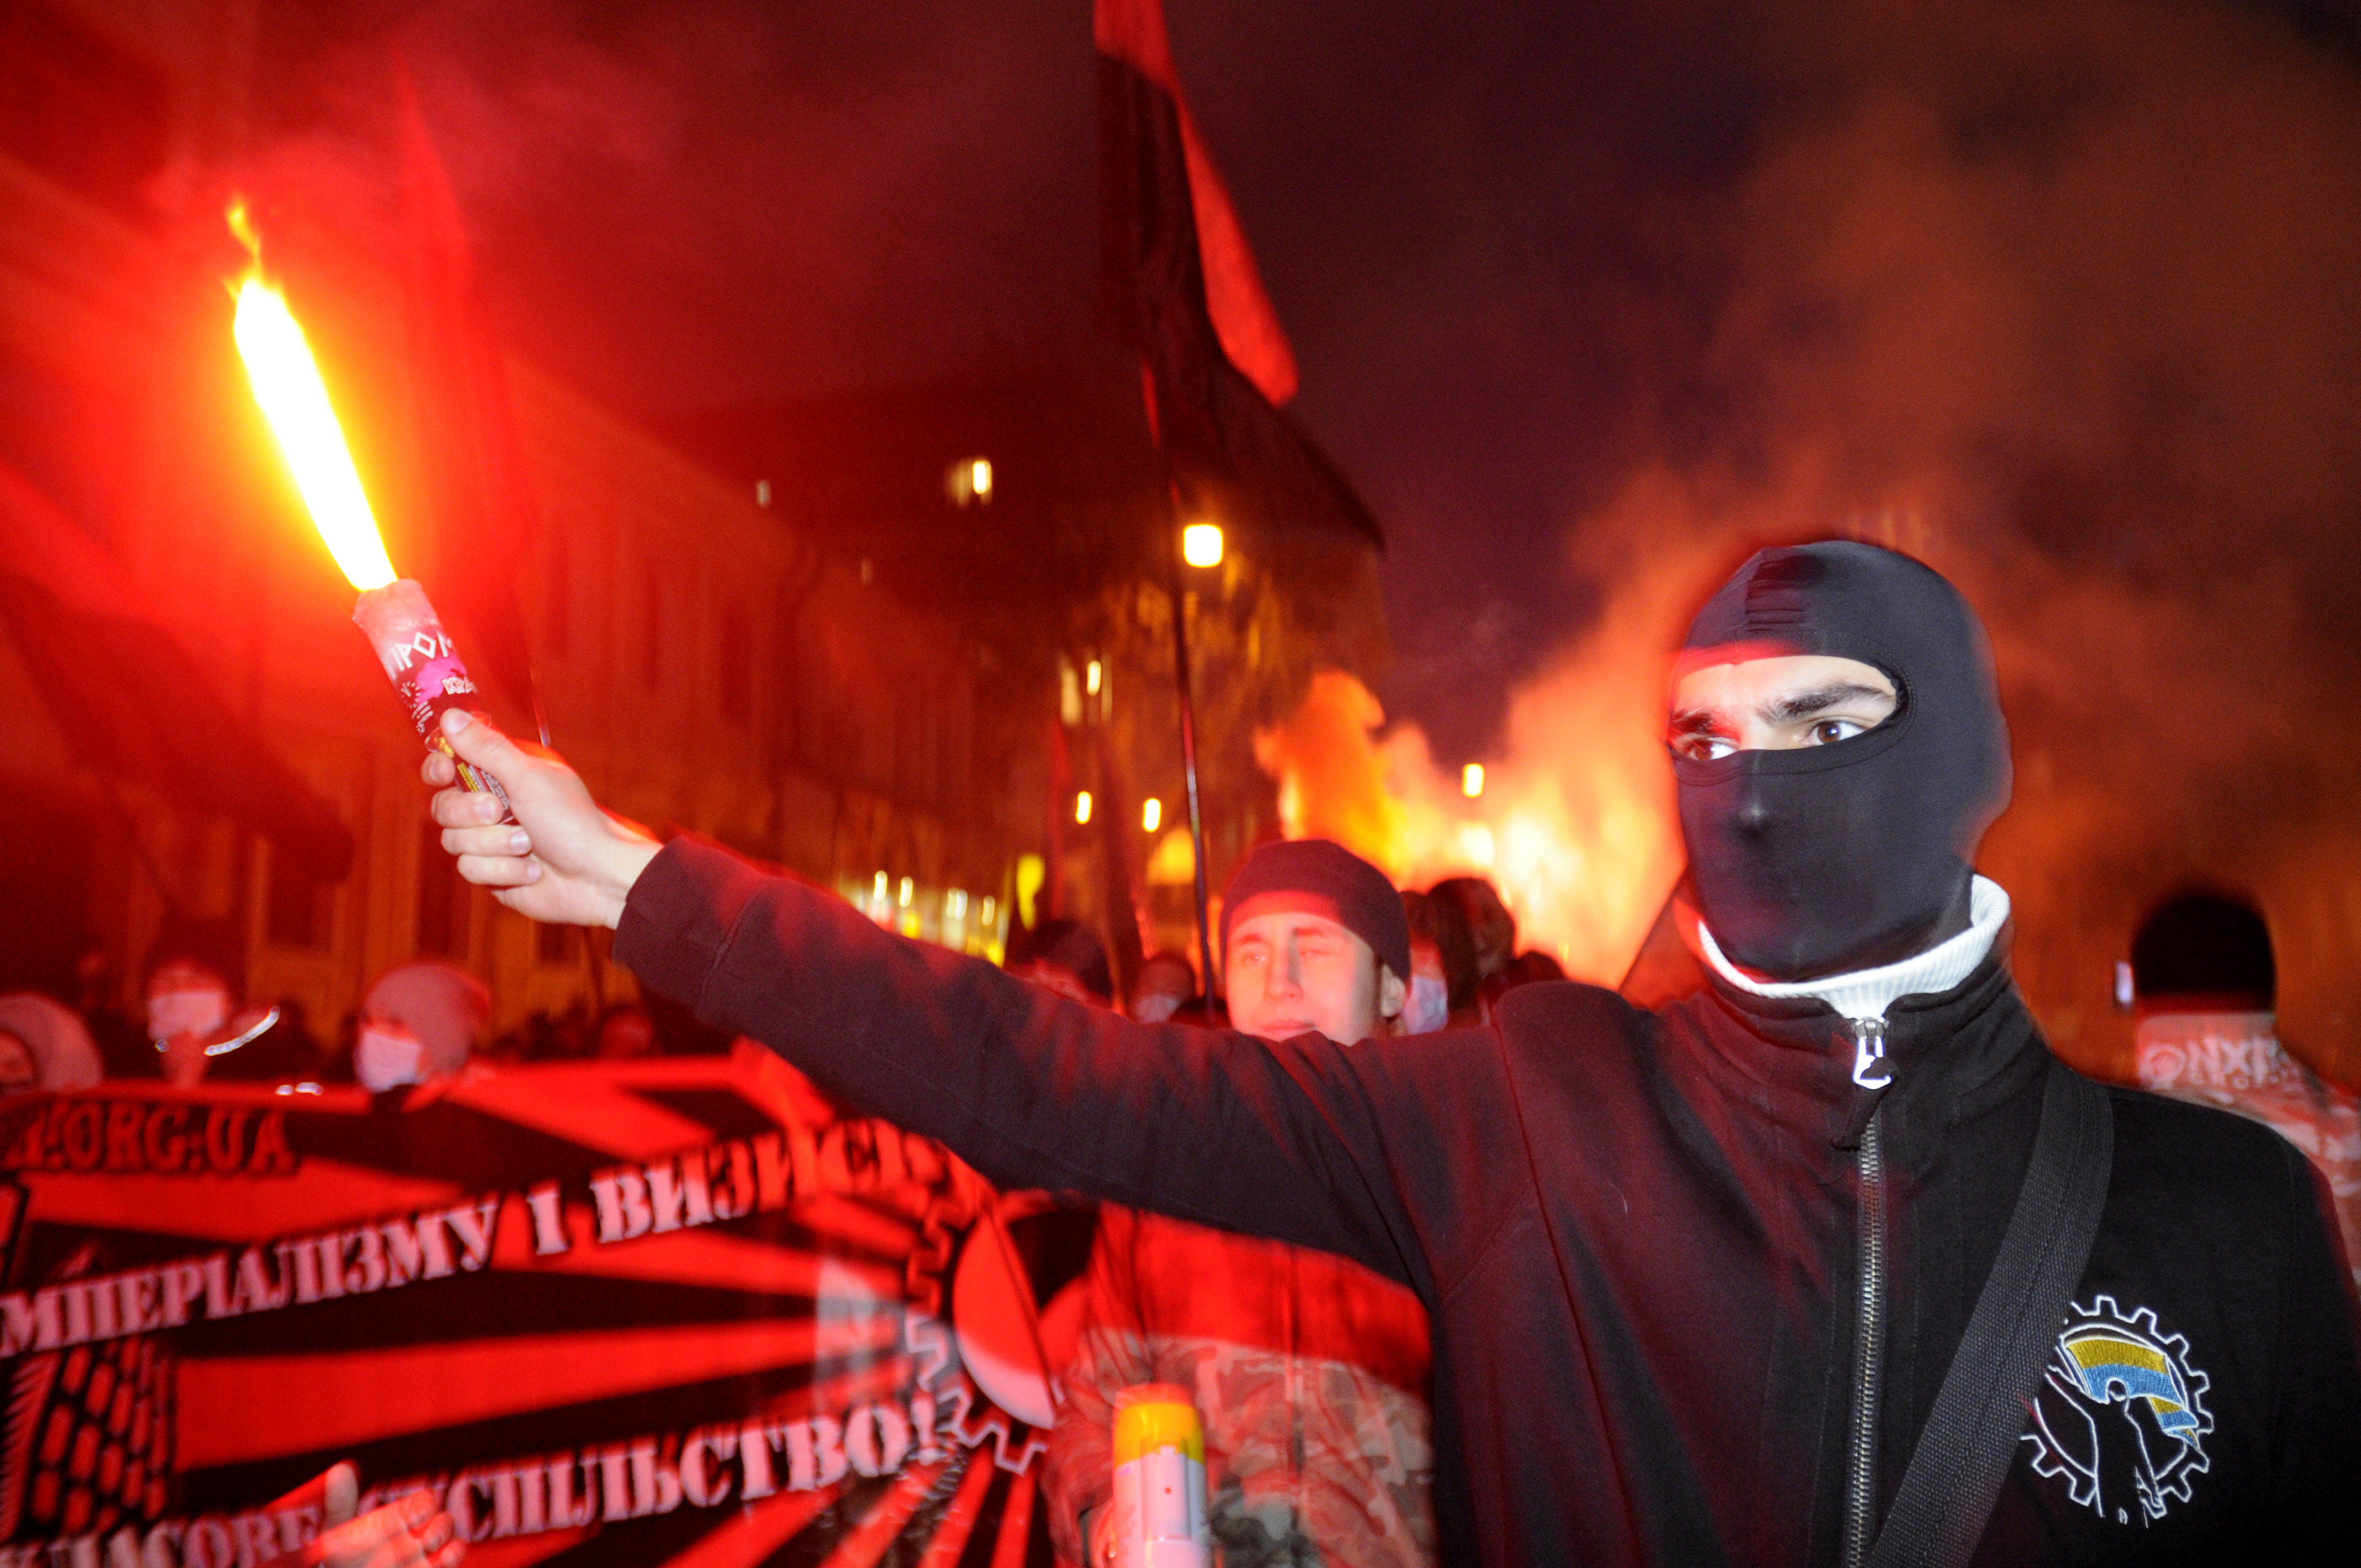 Ukraina och Polen har stora problem med rasism och grupperingar som ofta är våldsamma.